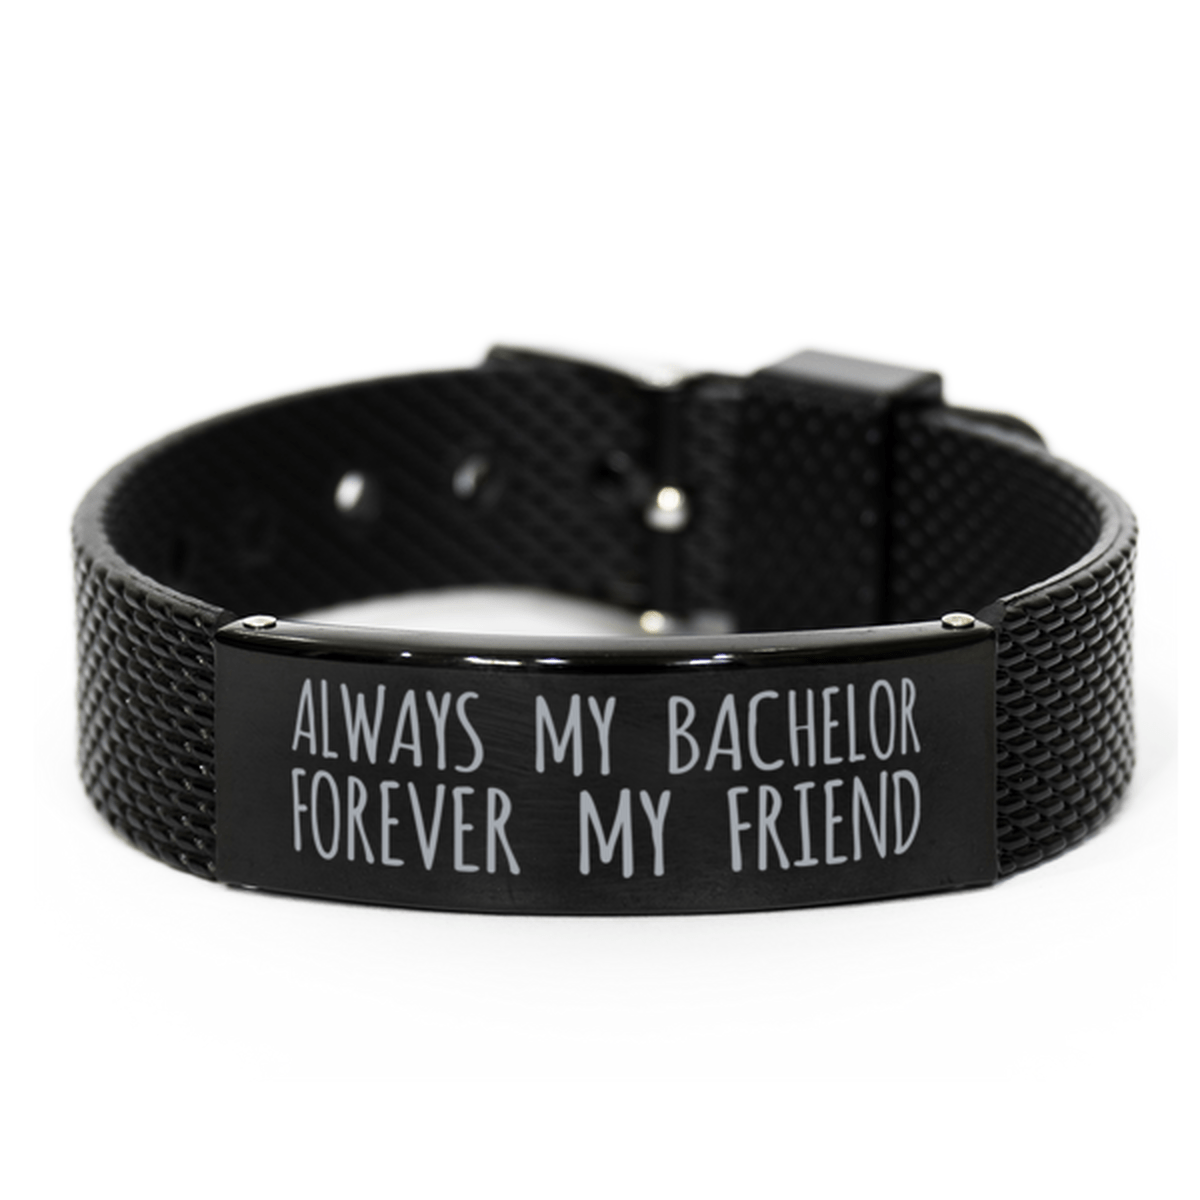 Inspirational Bachelor Black Shark Mesh Bracelet, Always My Bachelor Forever My Friend, Best Birthday Gifts for Family Friends